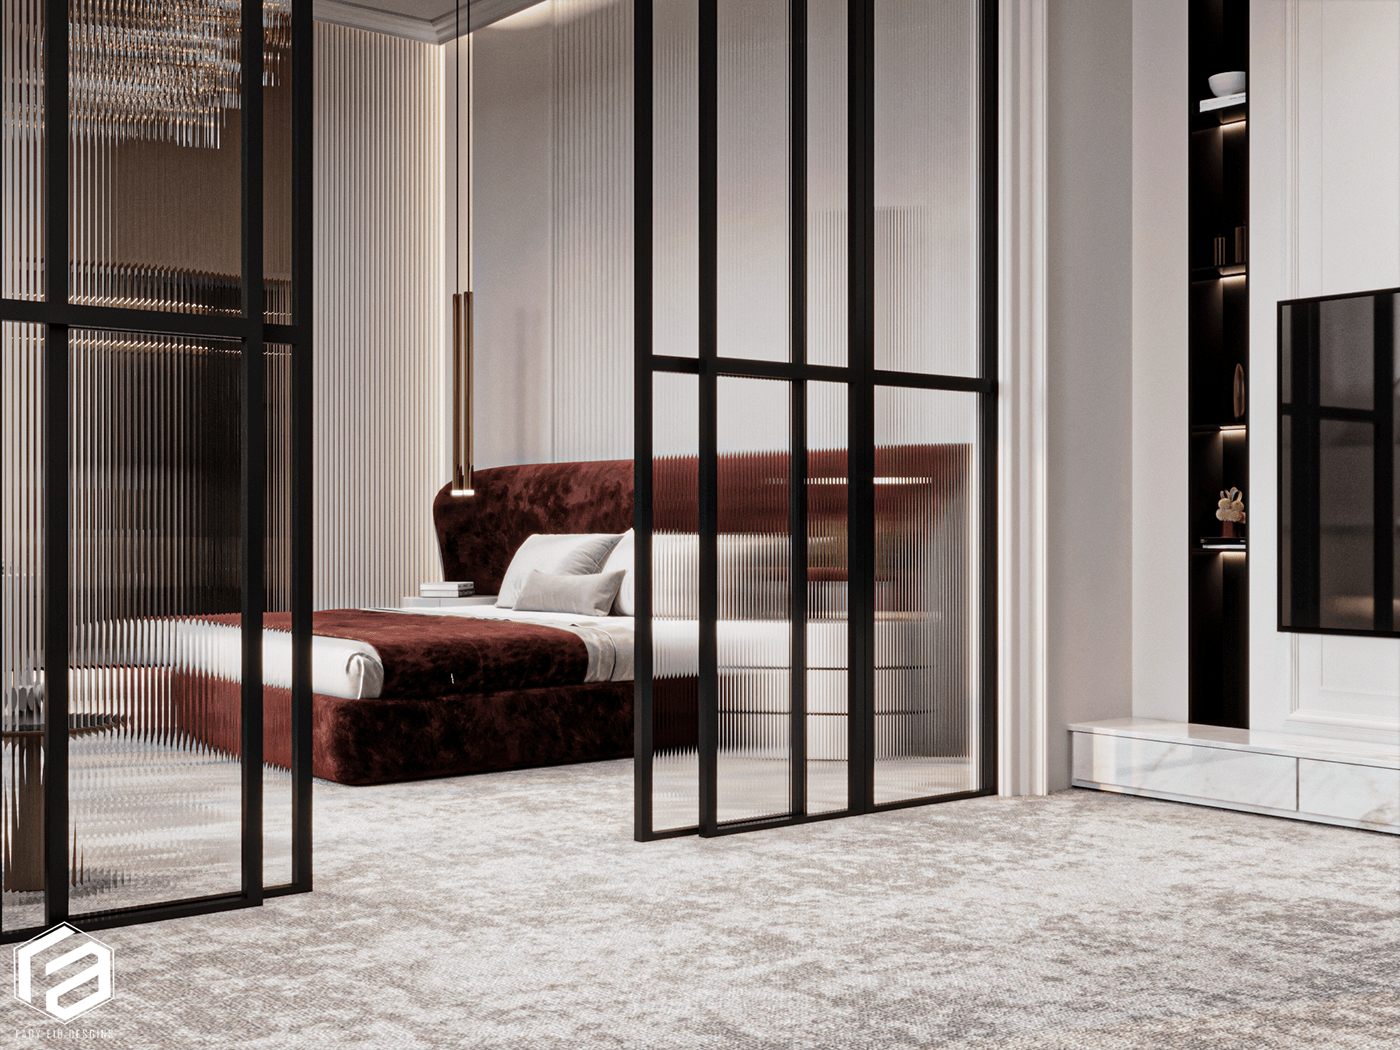 Interior bedroom design corona 3ds max Render